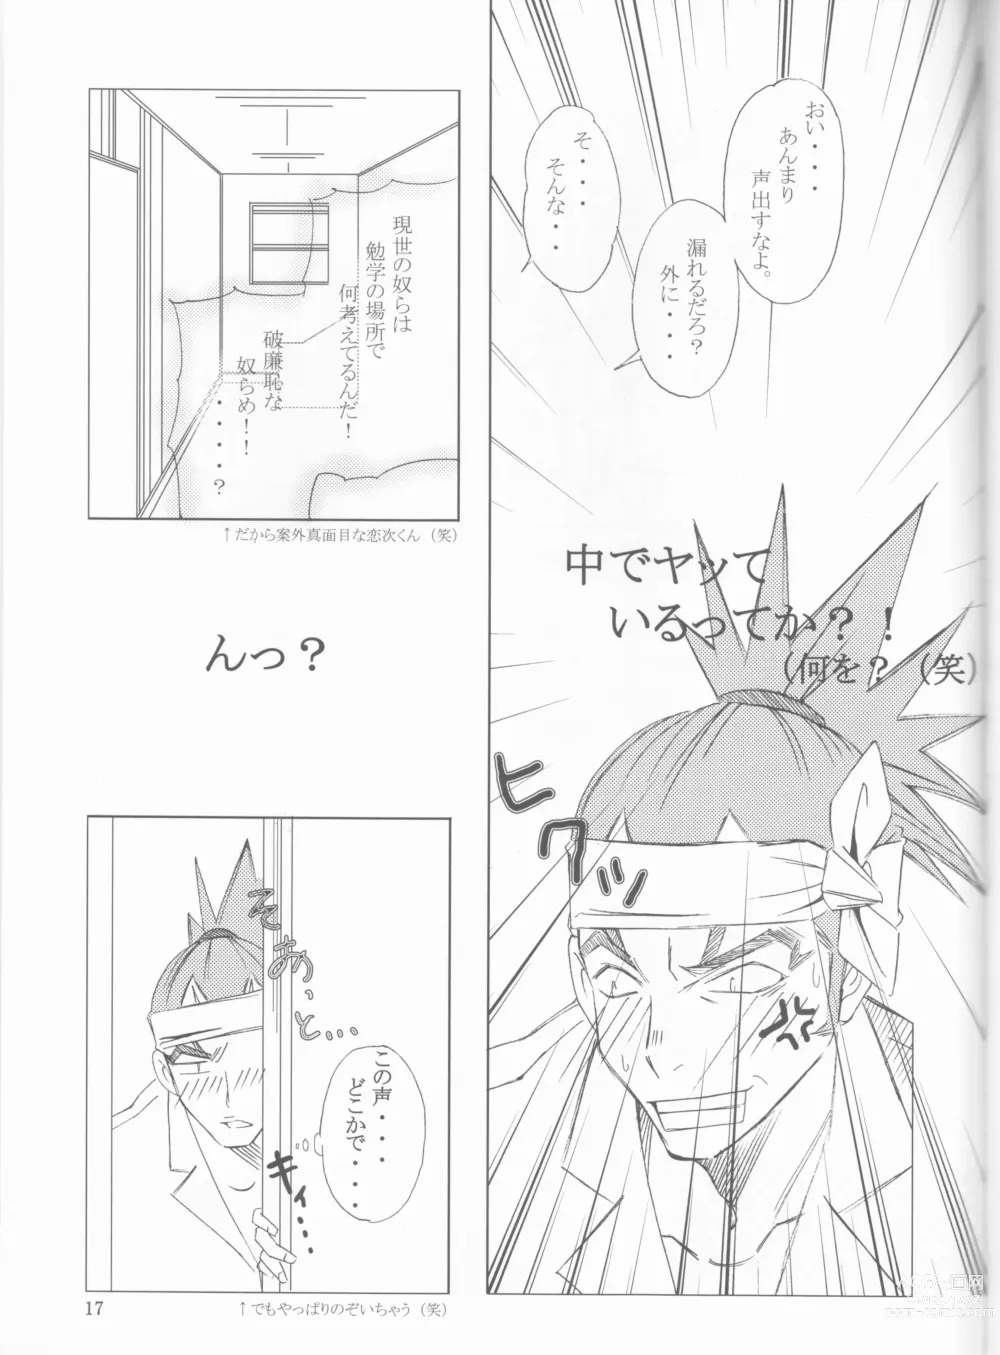 Page 17 of doujinshi Gakuen Heaven